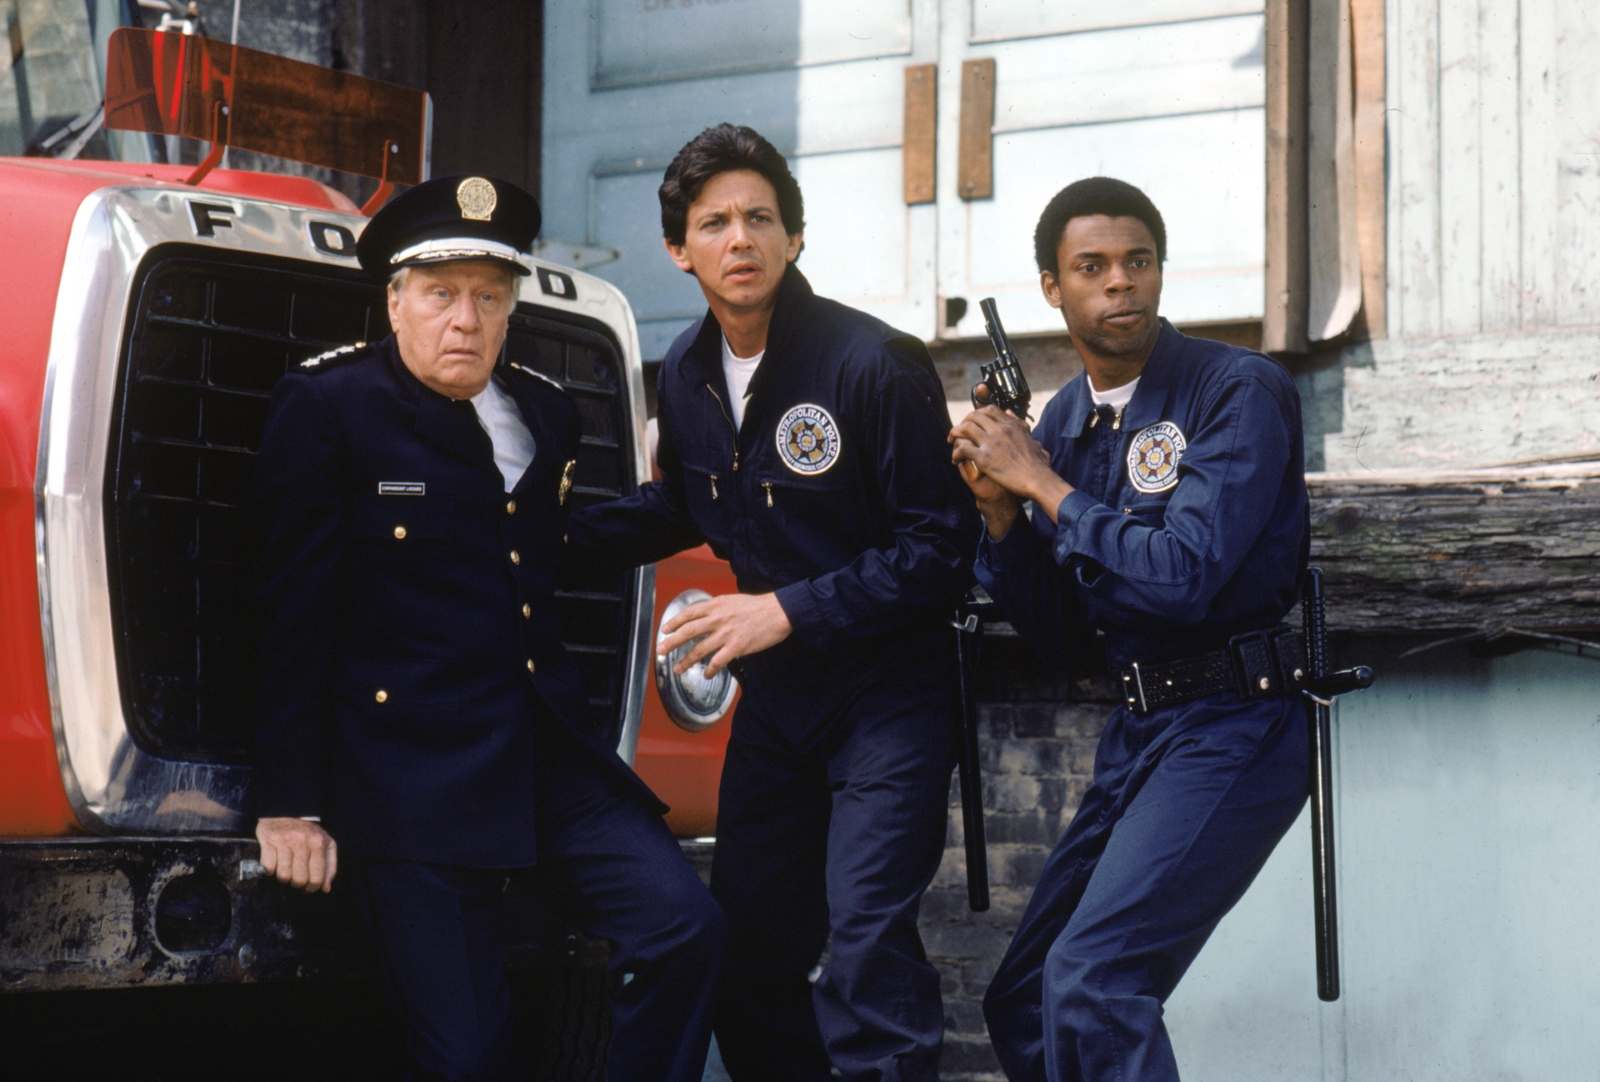 Kadr z filmu "Akademia policyjna". Trzej policjanci - jeden z nich, starszy, siedzi na samochodzie marki Ford, pozostali stoją obok niego.